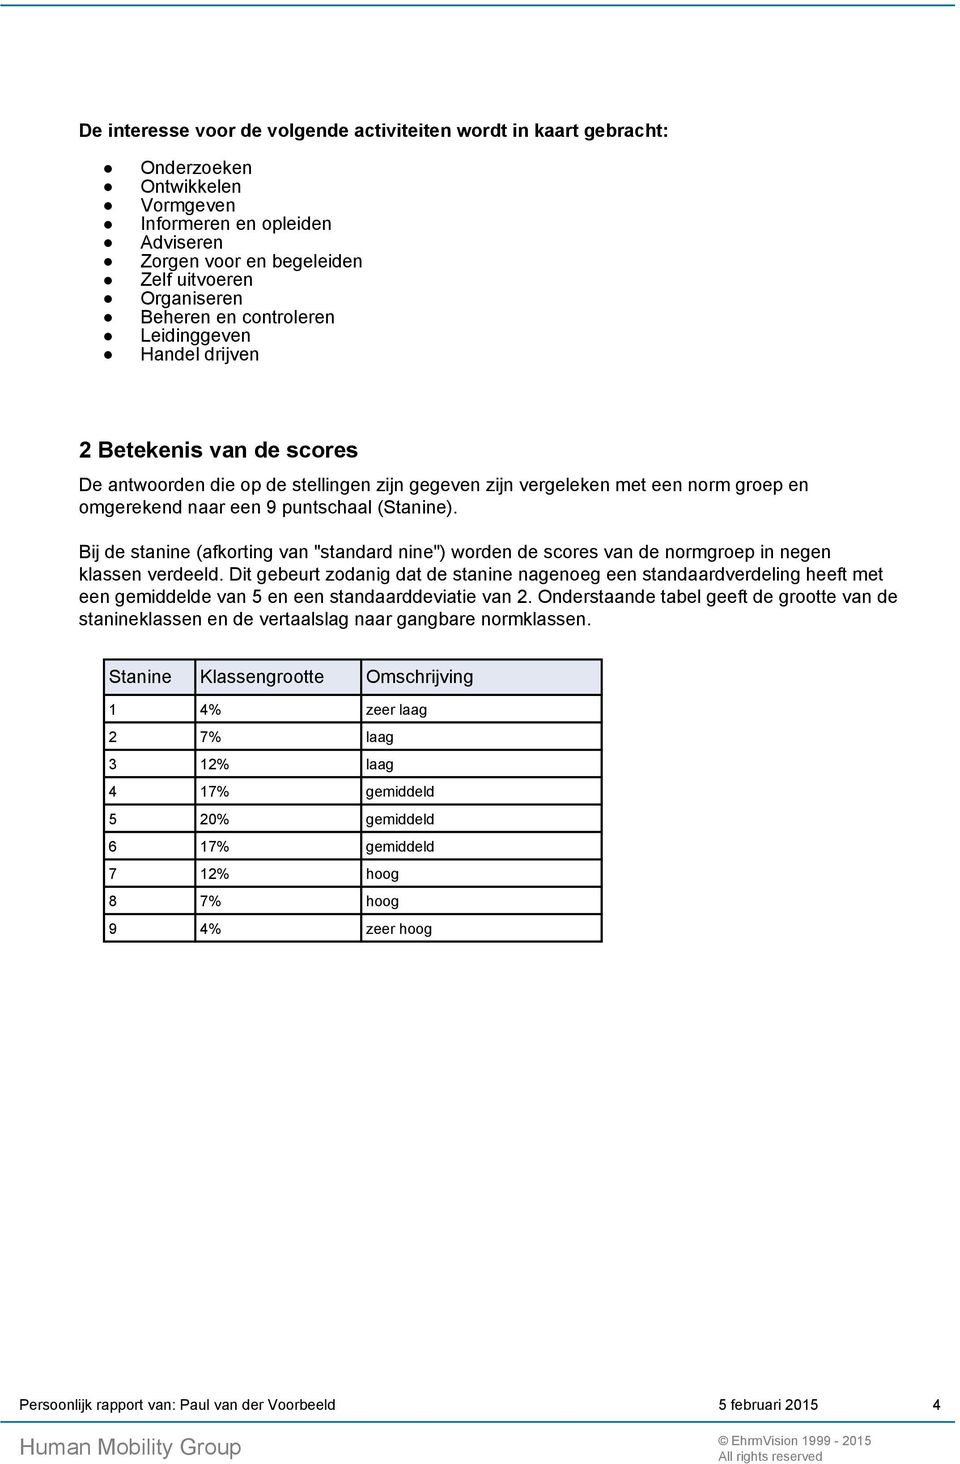 Bij de stanine (afkorting van "standard nine") worden de scores van de normgroep in negen klassen verdeeld.